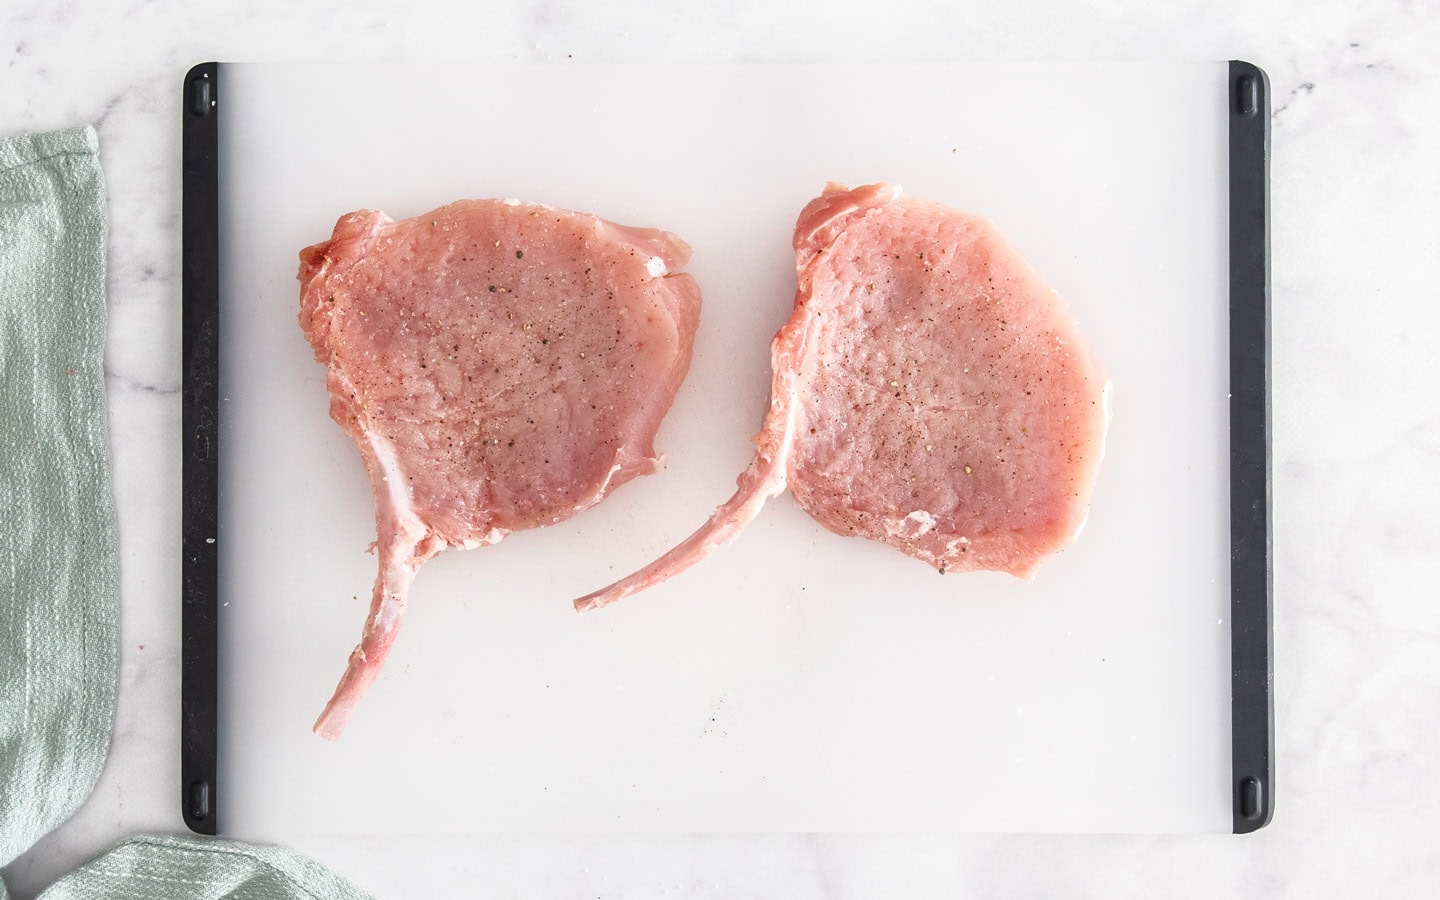 Two raw pork cutlets on a chopping board.